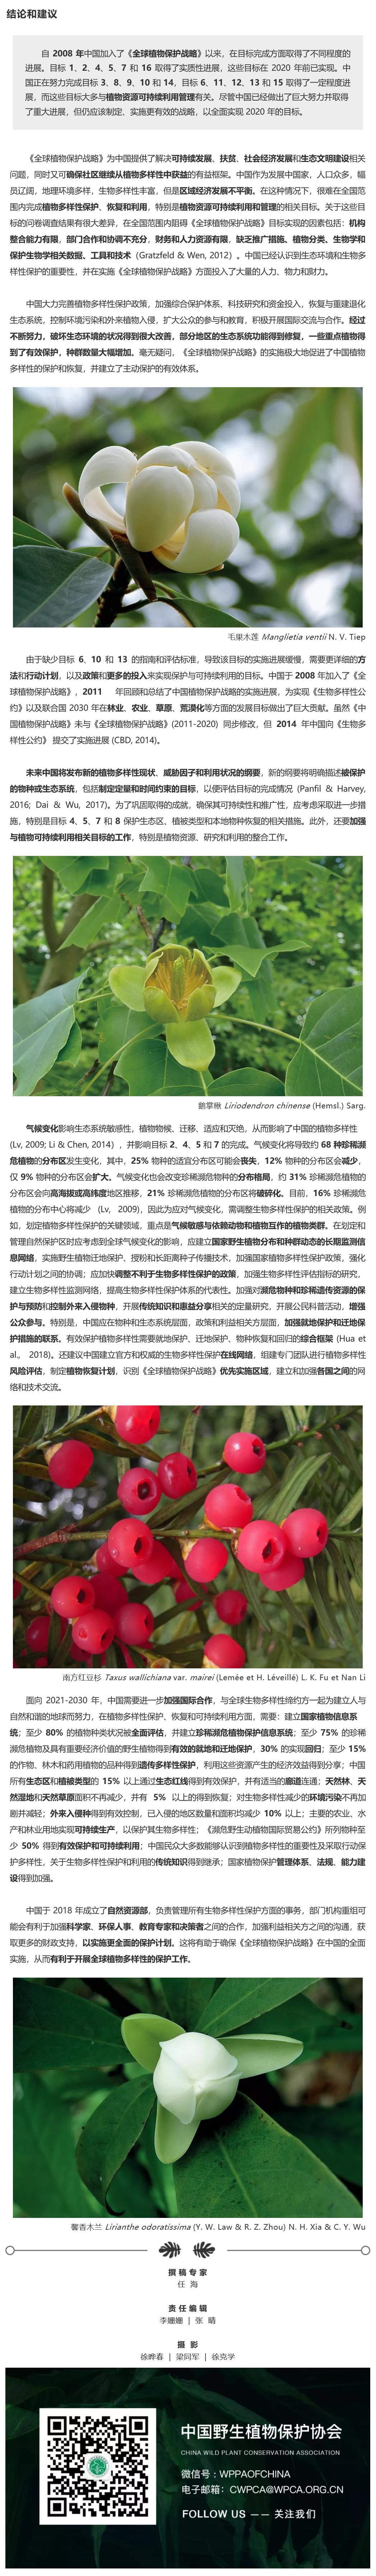 中国植物多样性-中国野生植物保护协会